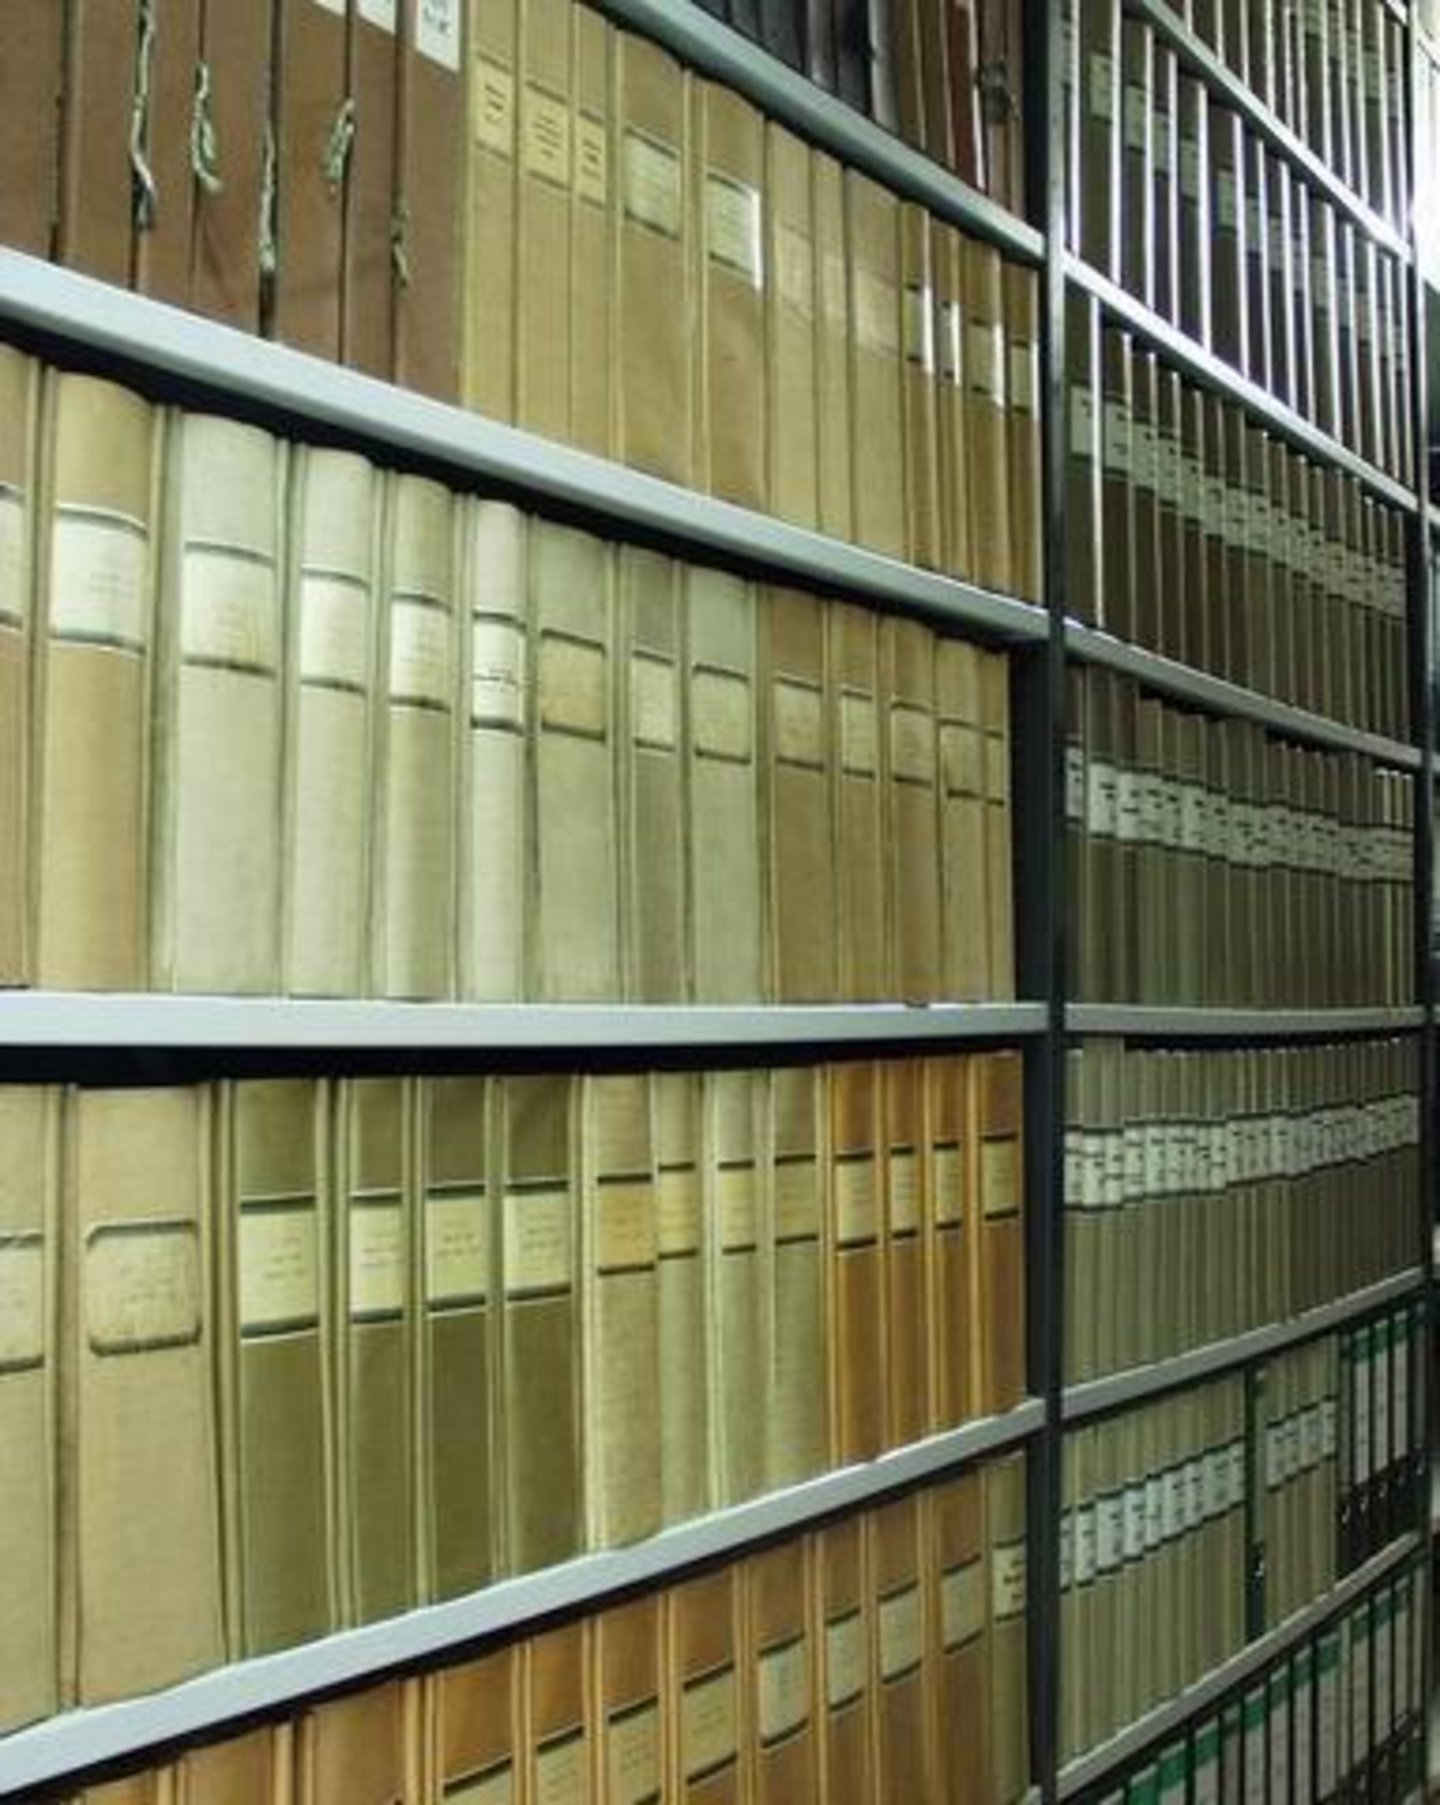 Bei den "alten Büchern", die man in Archiven findet, handelt es sich so gut wie nie um "Bücher" im bibliographischen Sinne. Bei genauerem Hinsehen entpuppen sie sich nämlich als Amtsbücher und damit im Grunde als fest gebundene Akten. 